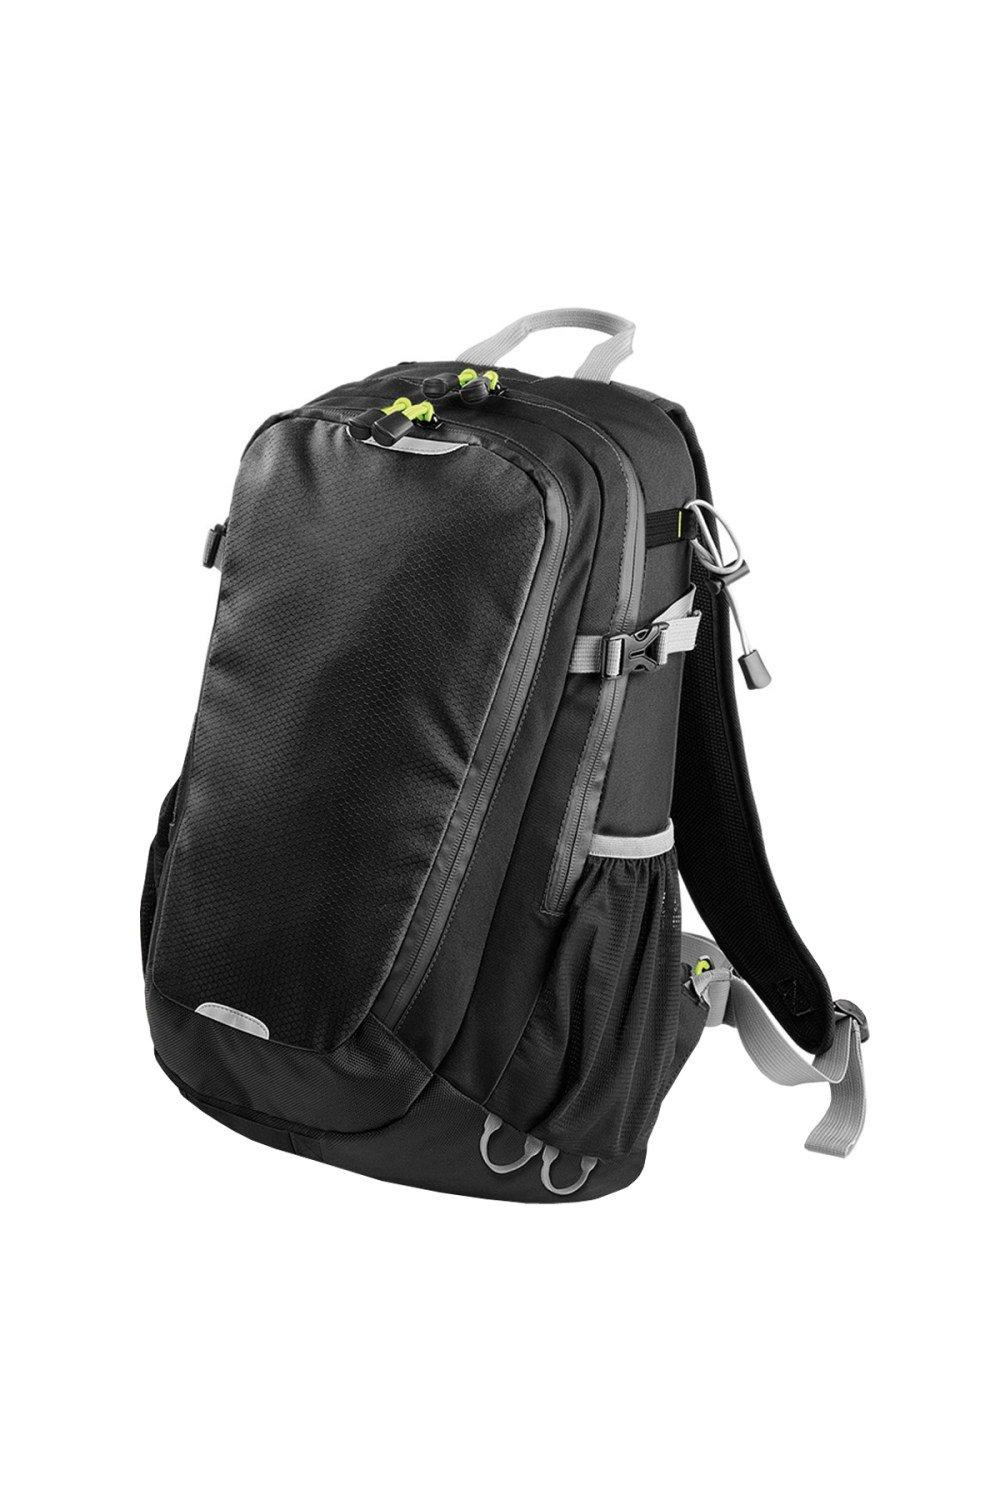 Рюкзак Apex Daypack объемом 20 литров (20 л, ноутбук с диагональю до 15,6 дюйма) Quadra, черный чехол mypads собери приставку детский для oukitel wp16 задняя панель накладка бампер